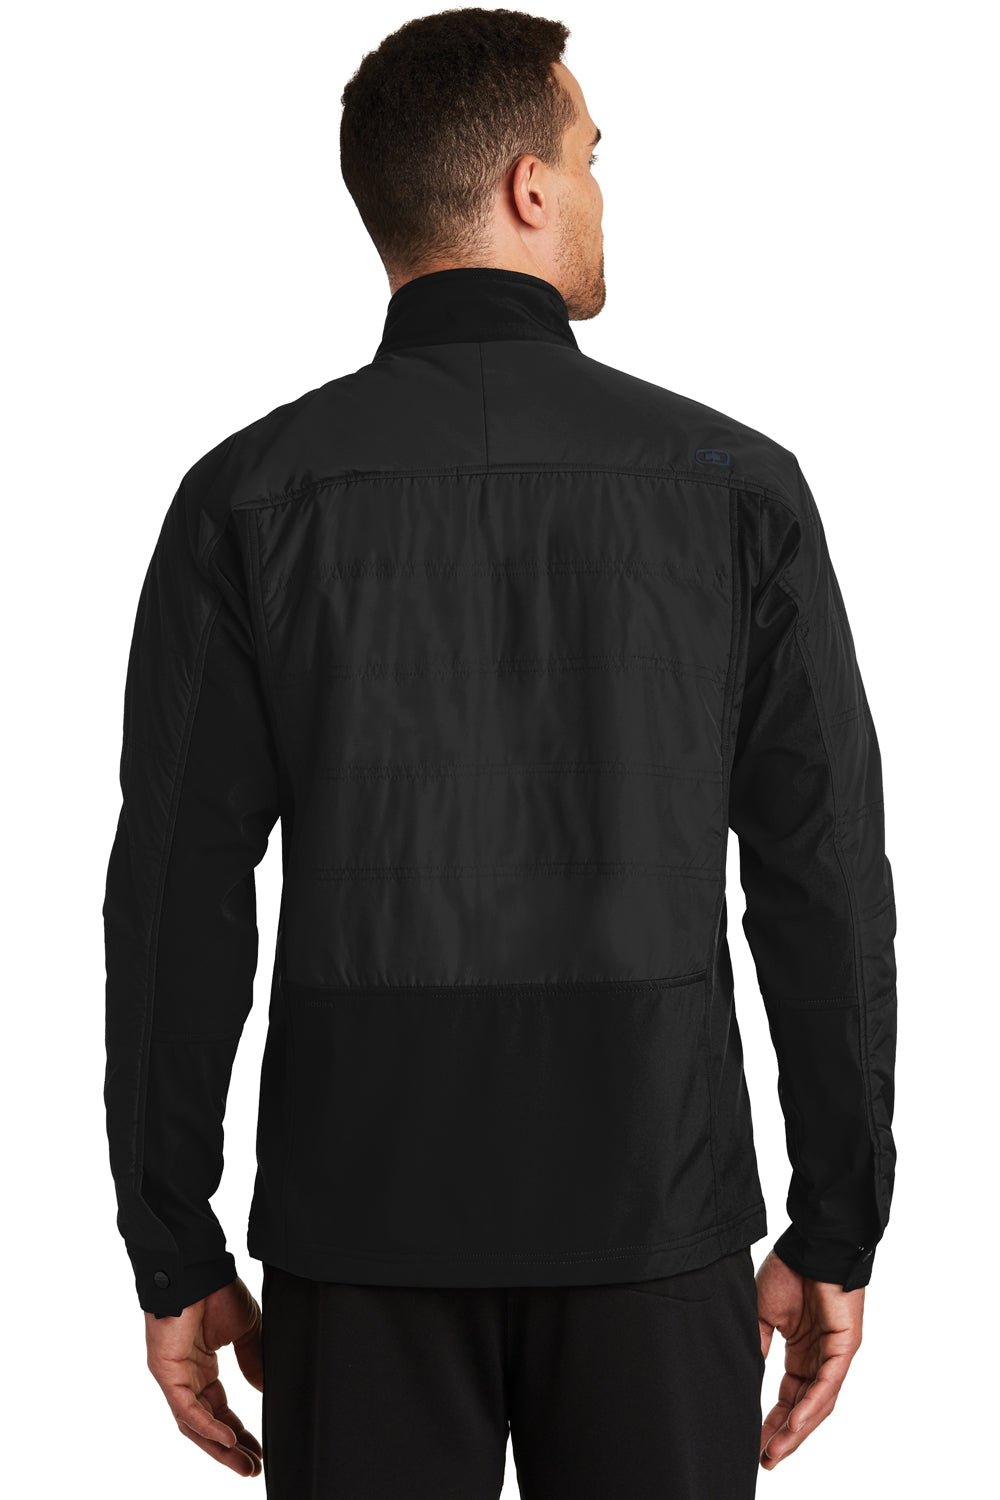 Ogio OE722 Mens Endurance Brink Wind & Water Resistant Full Zip Jacket Black Back